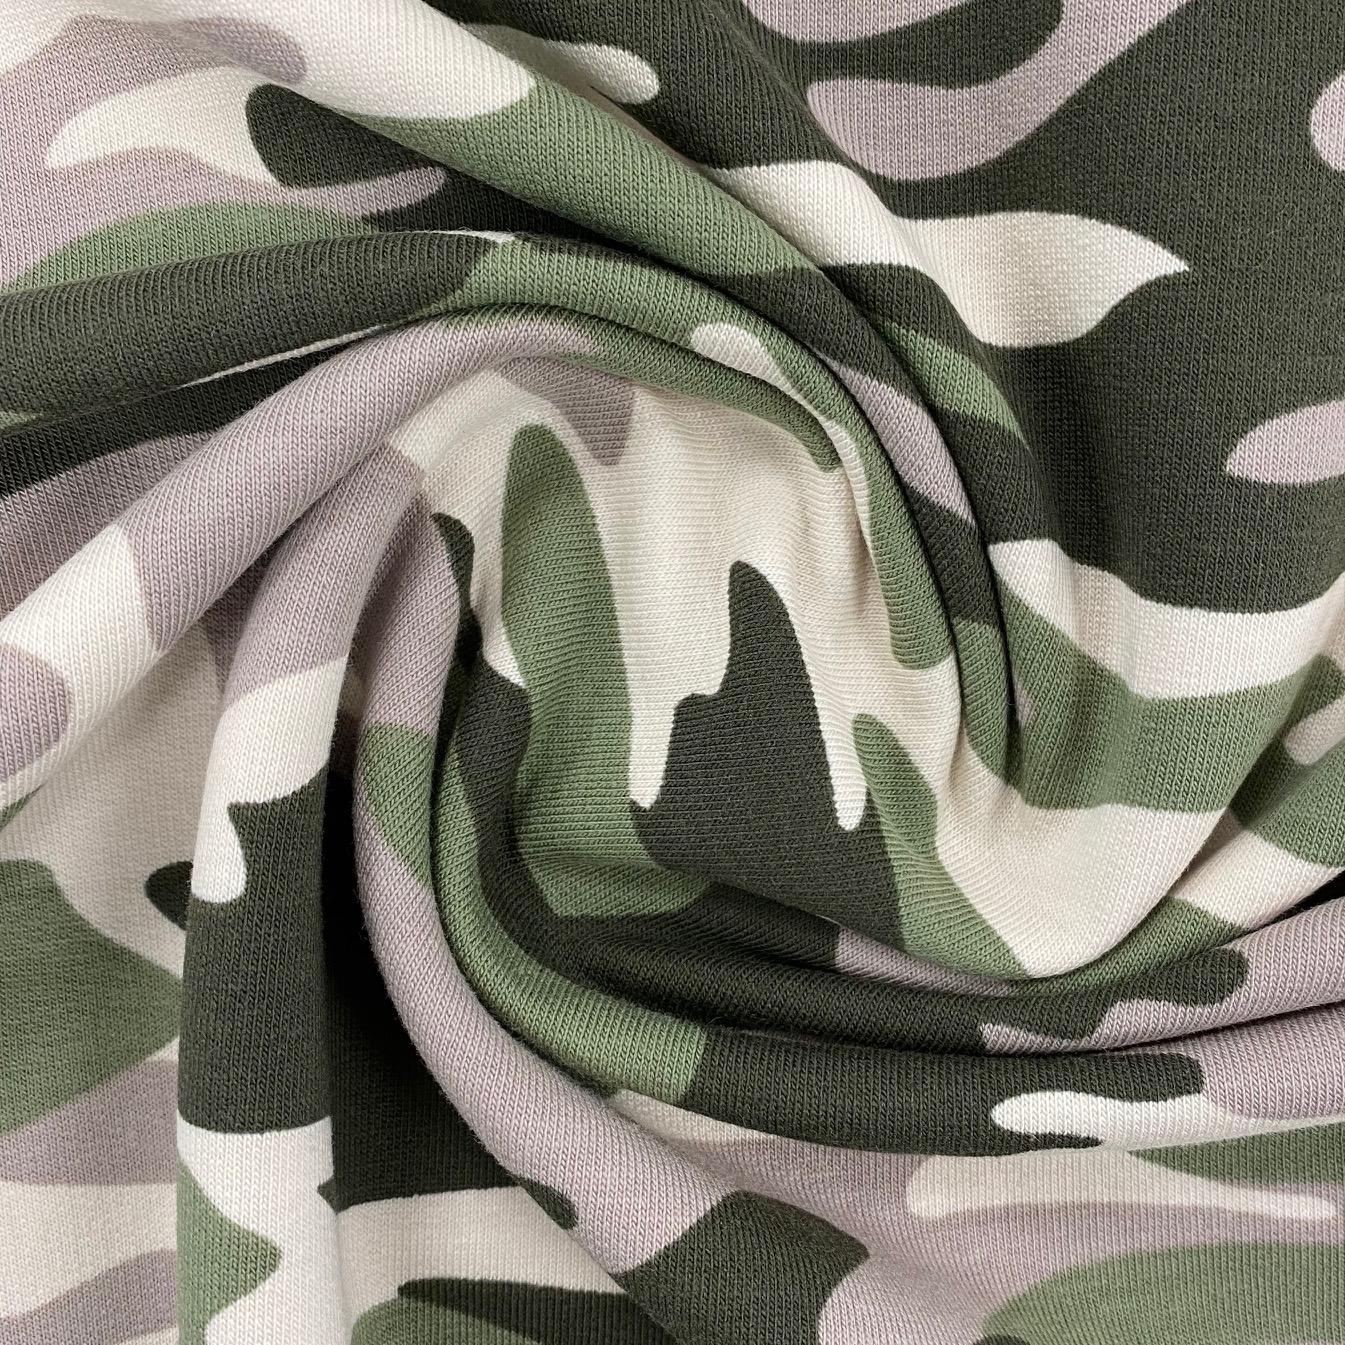 Sweat French Terry, angeraut, Camouflage olivgrün/beige.  Art. 4979-1553